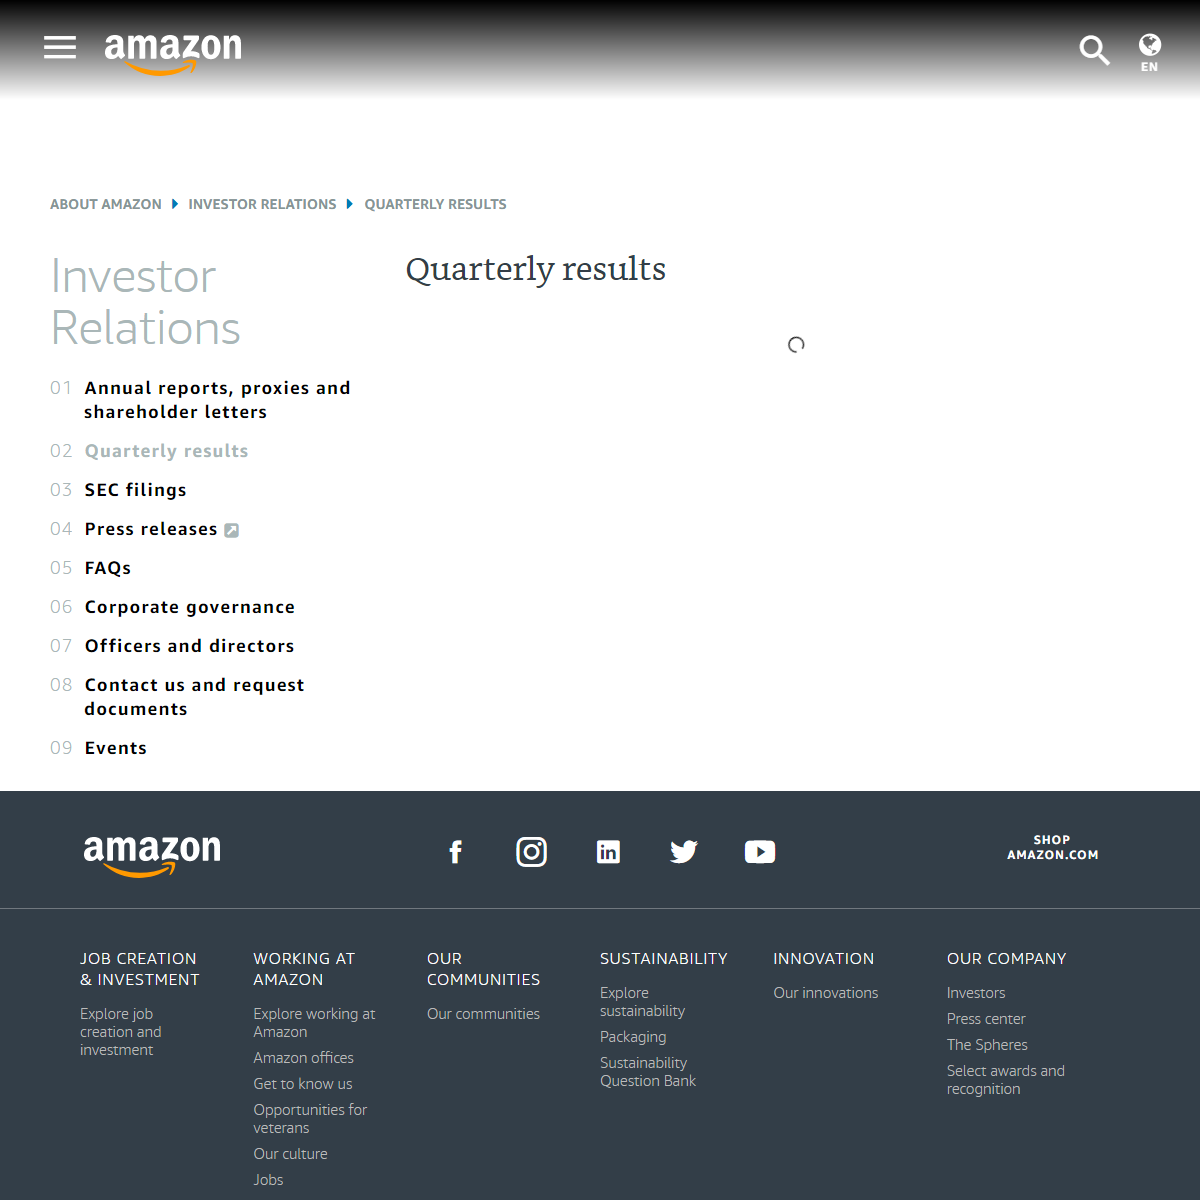 Amazon.com, Inc. - Quarterly results